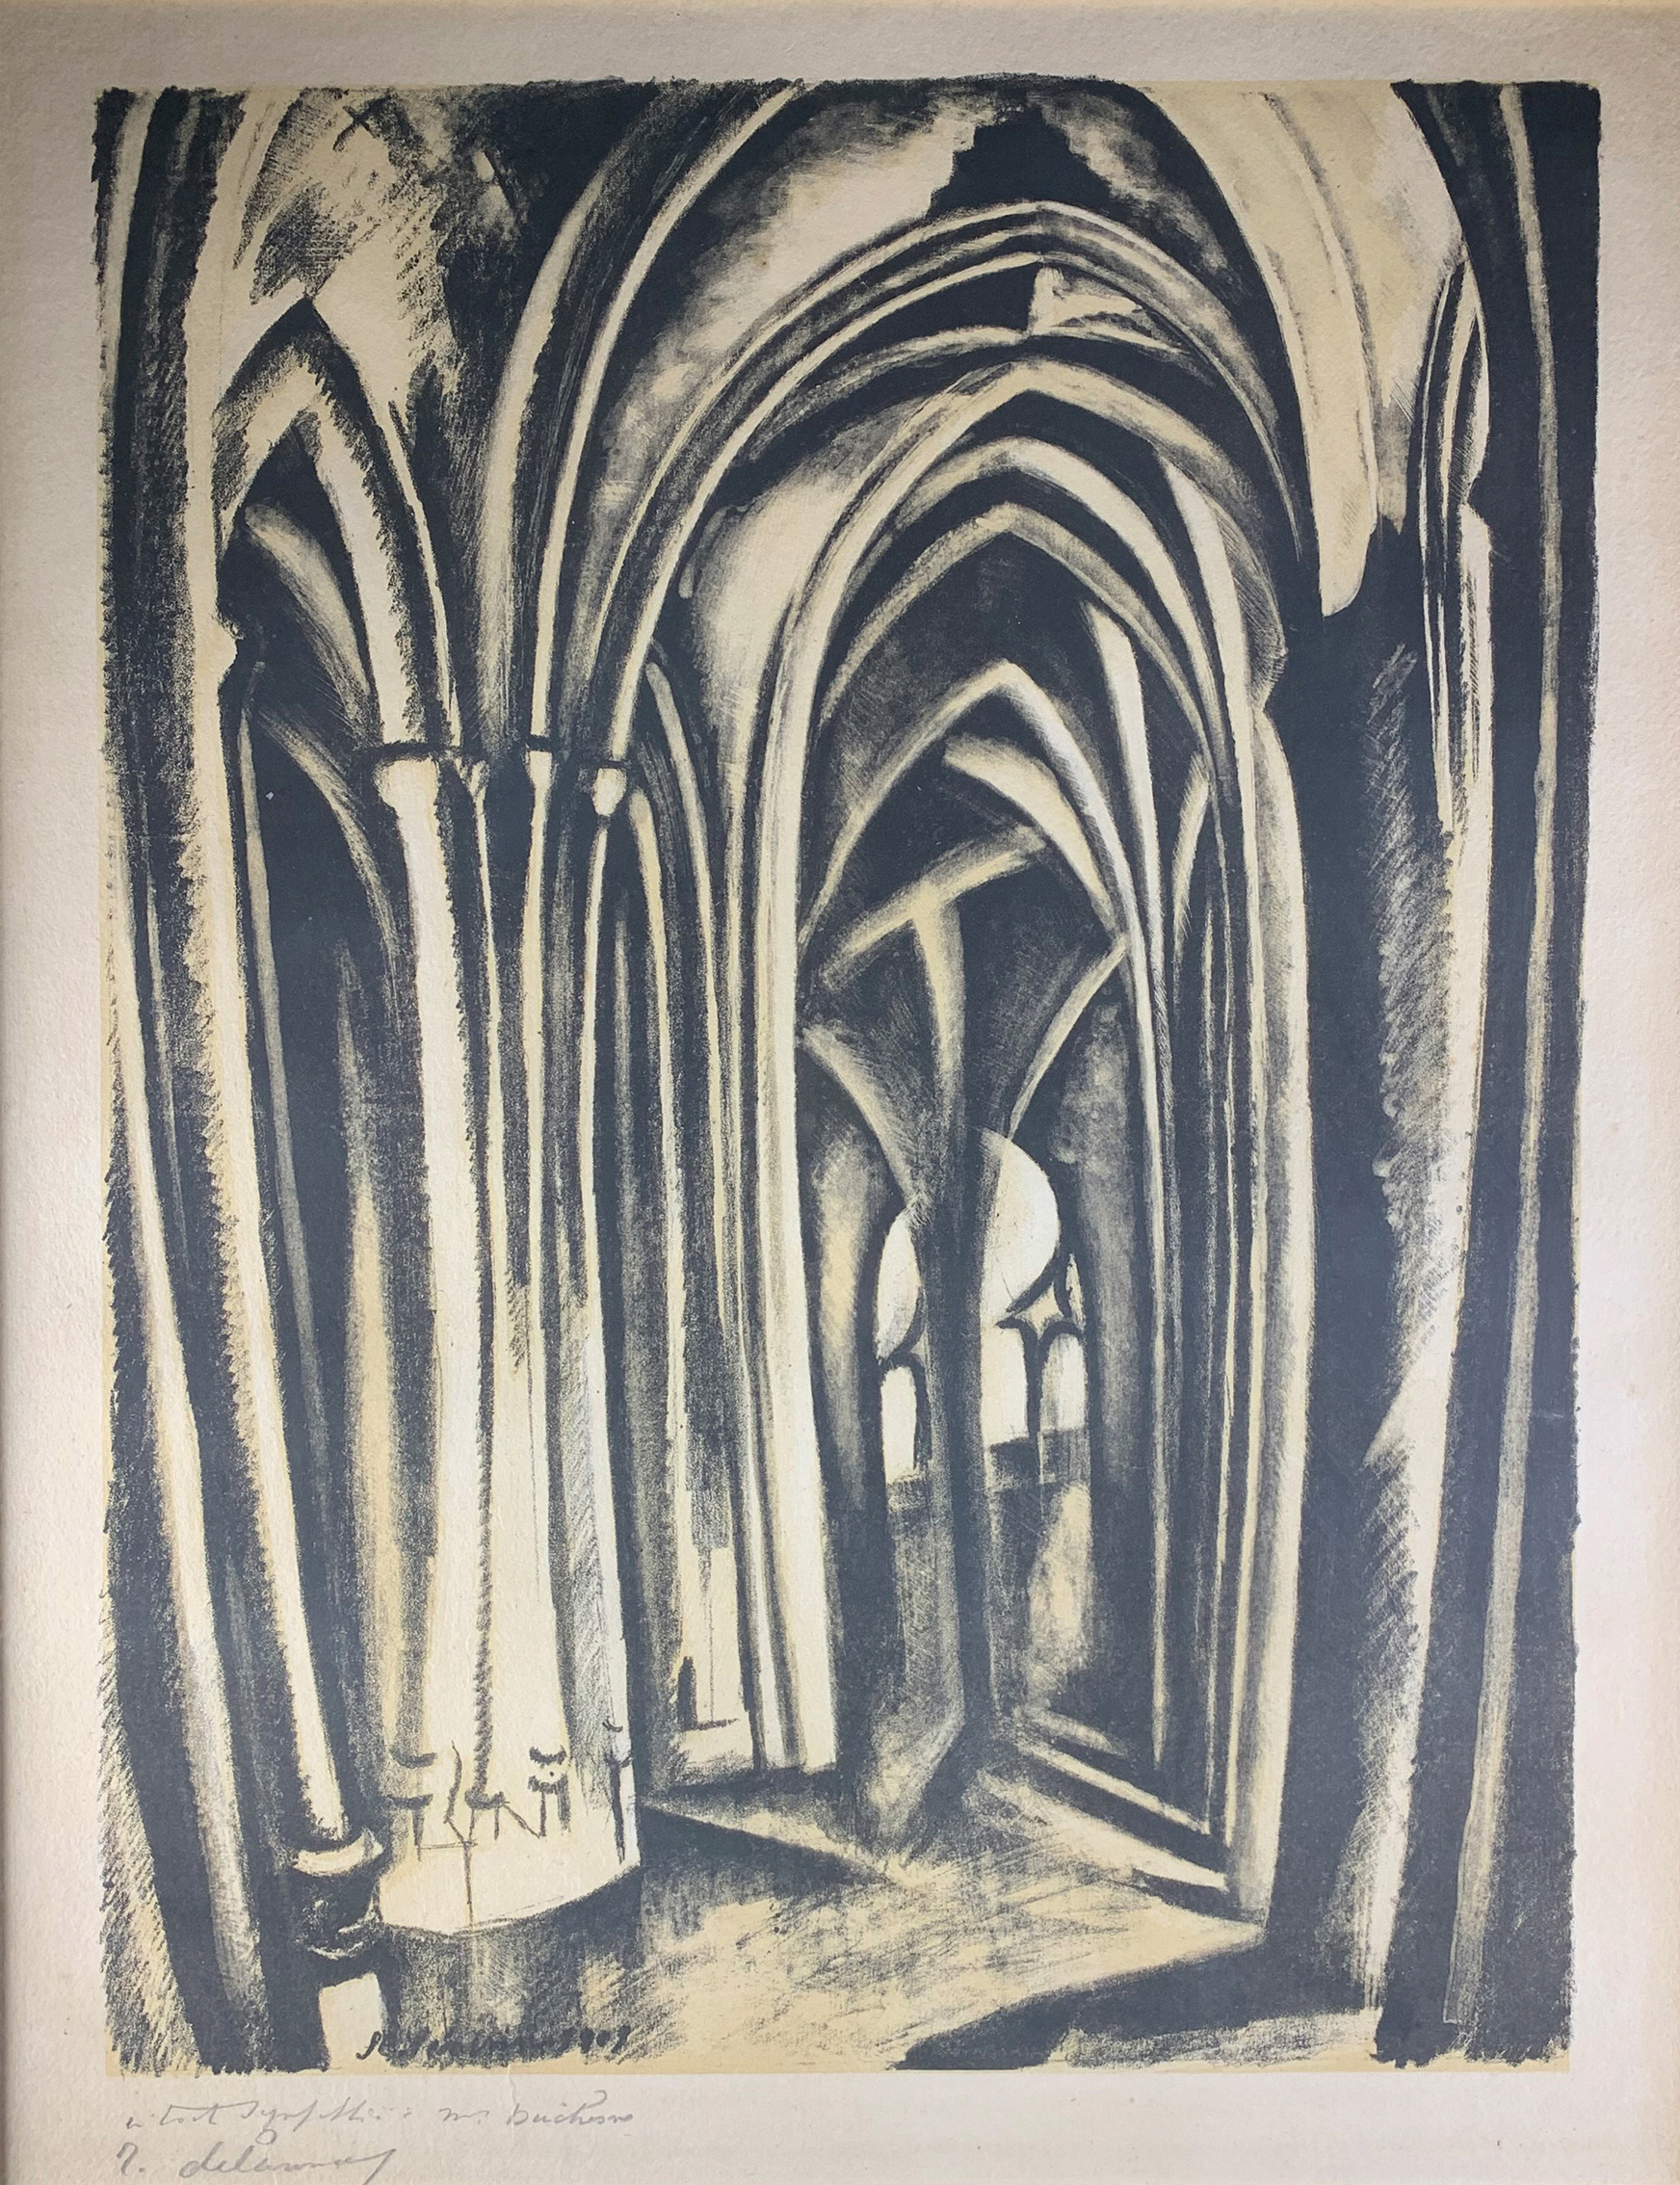 Robert Delaunay, Saint Sverin, ca. 1923-5 (?), color lithograph